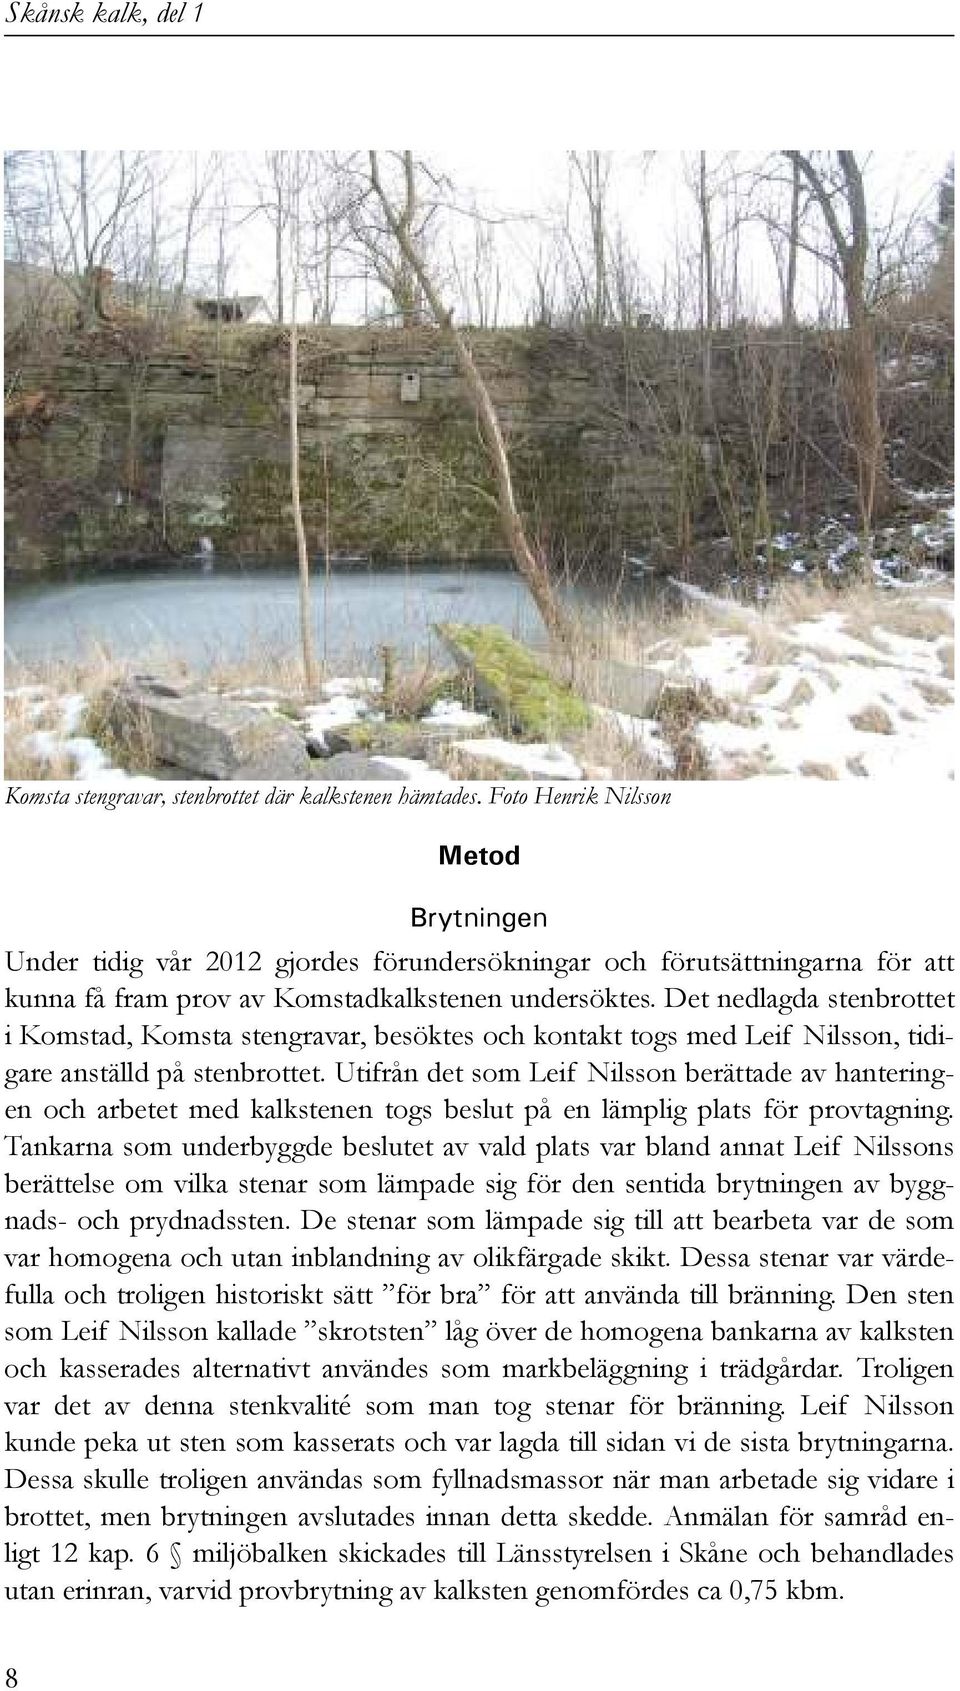 Det nedlagda stenbrottet i Komstad, Komsta stengravar, besöktes och kontakt togs med Leif Nilsson, tidigare anställd på stenbrottet.